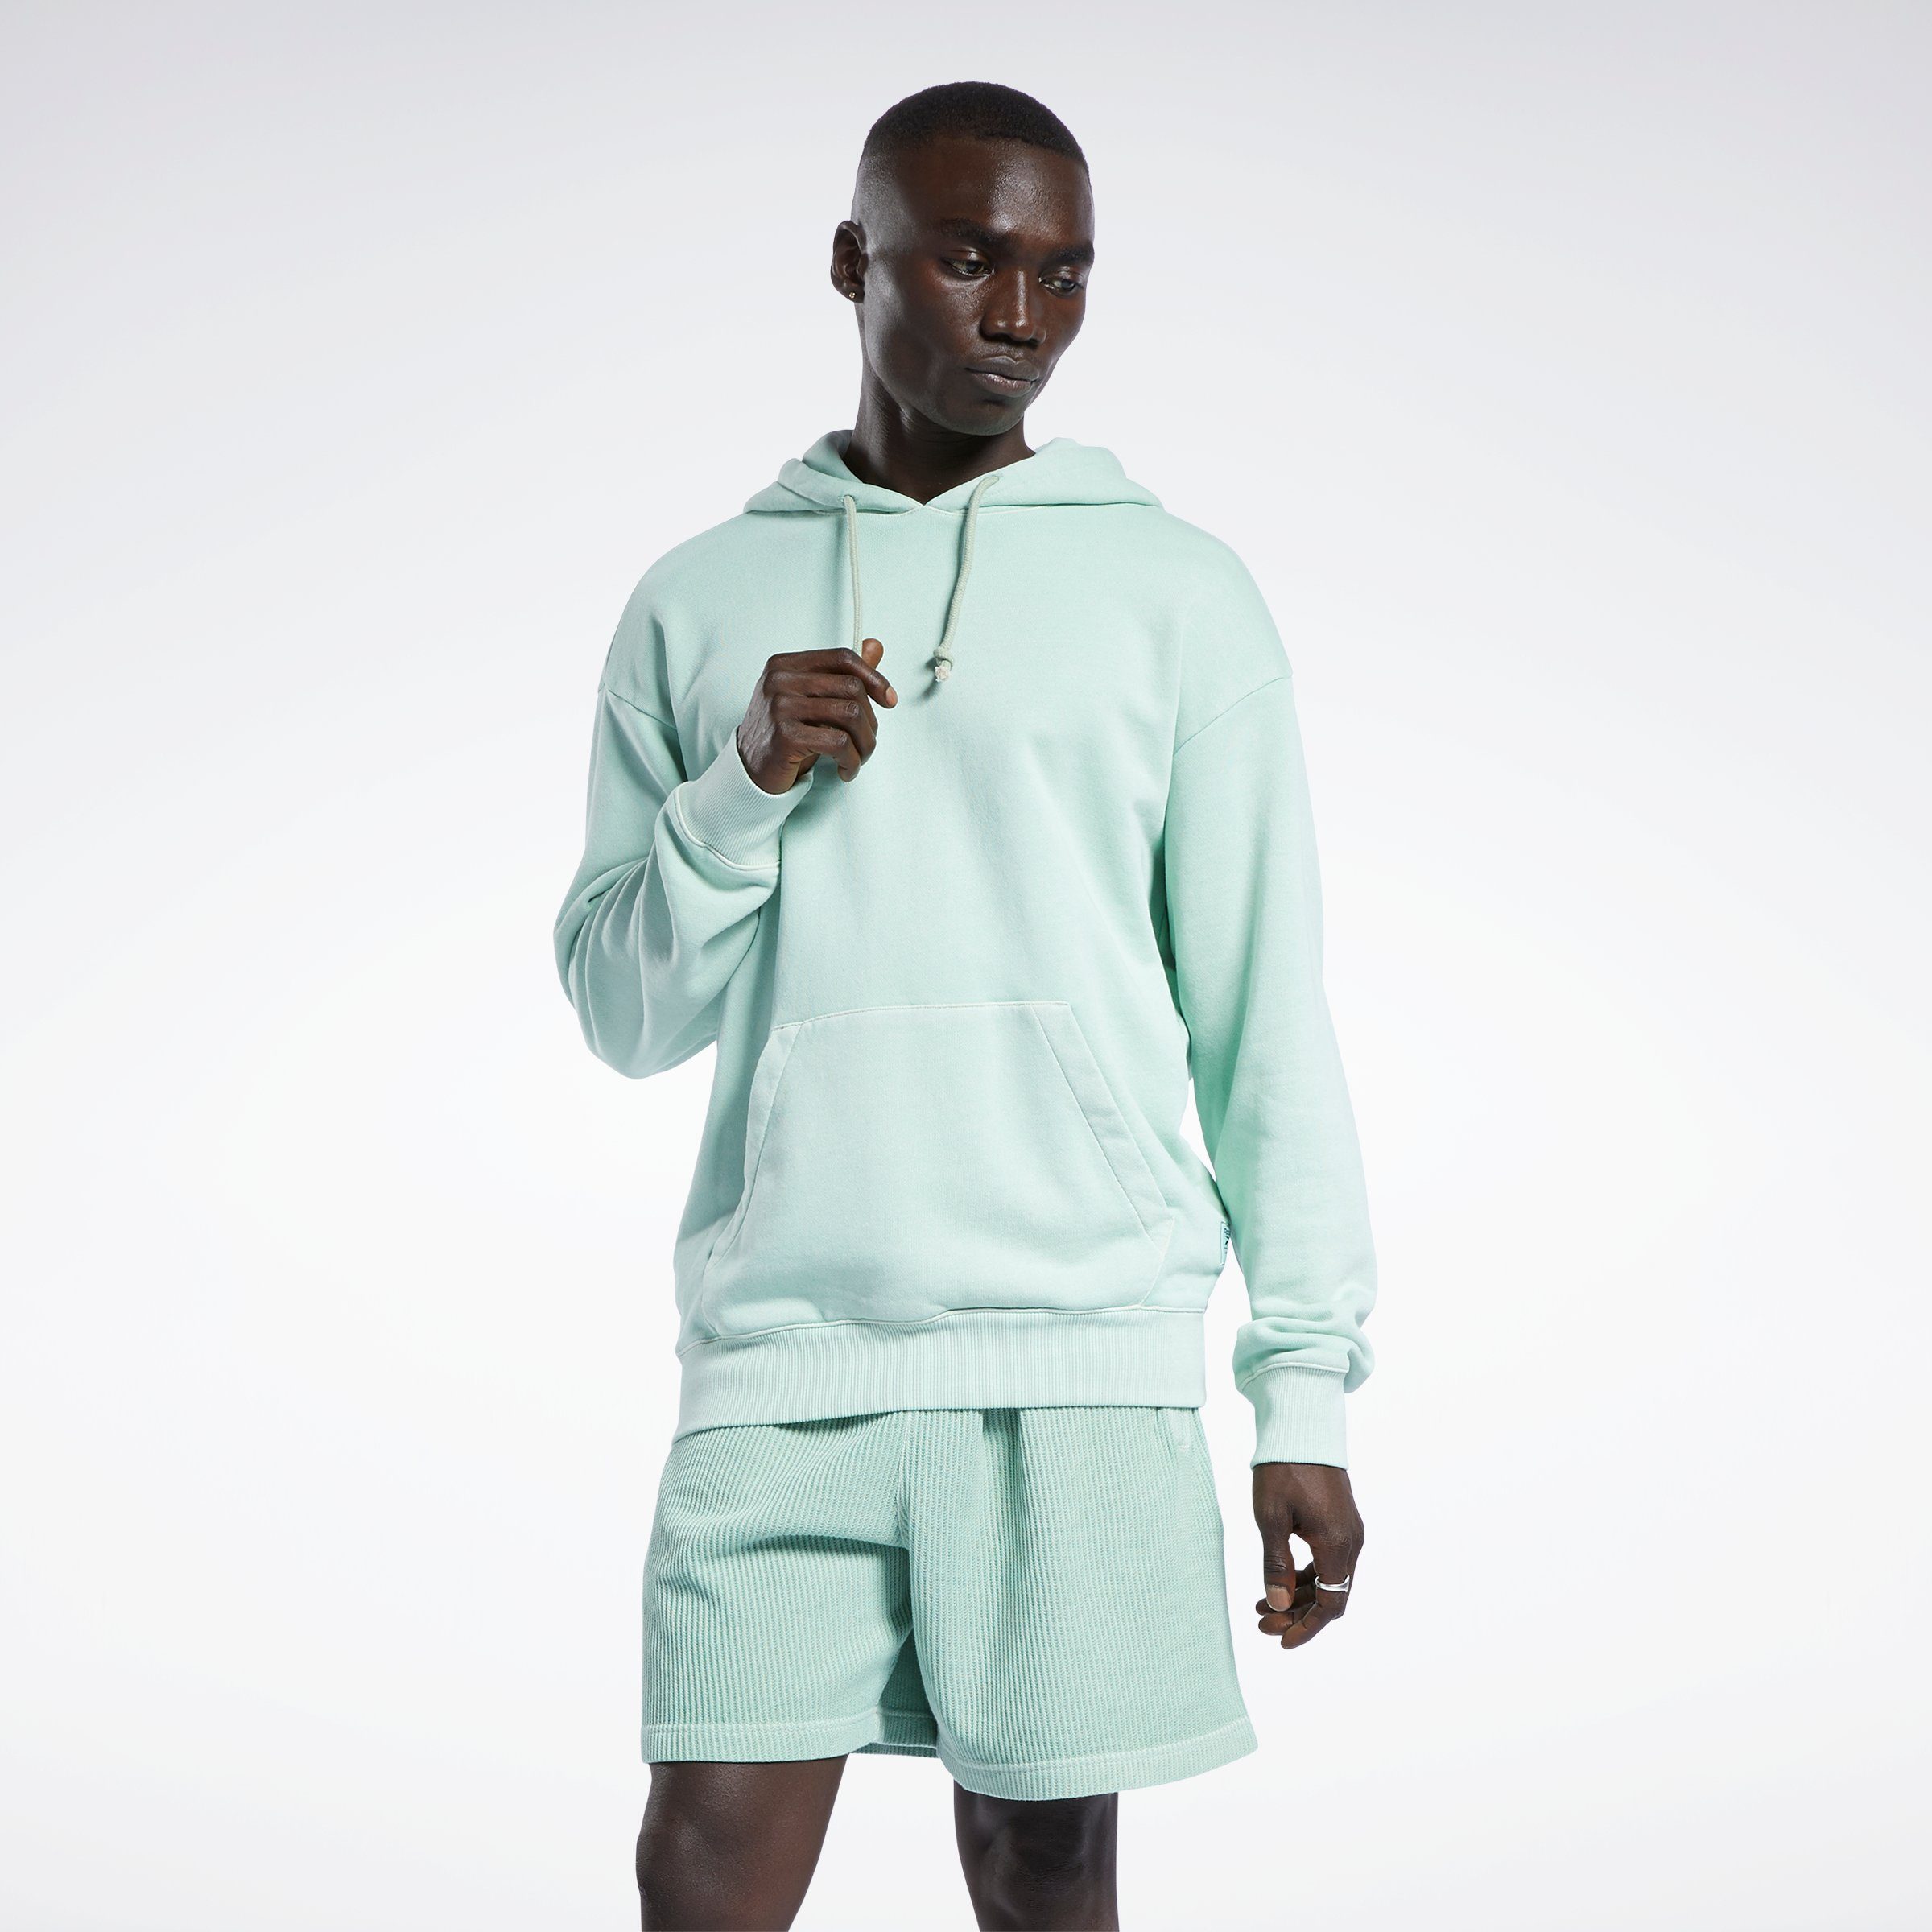 Reebok Classic Pullover Herren online kaufen | OTTO